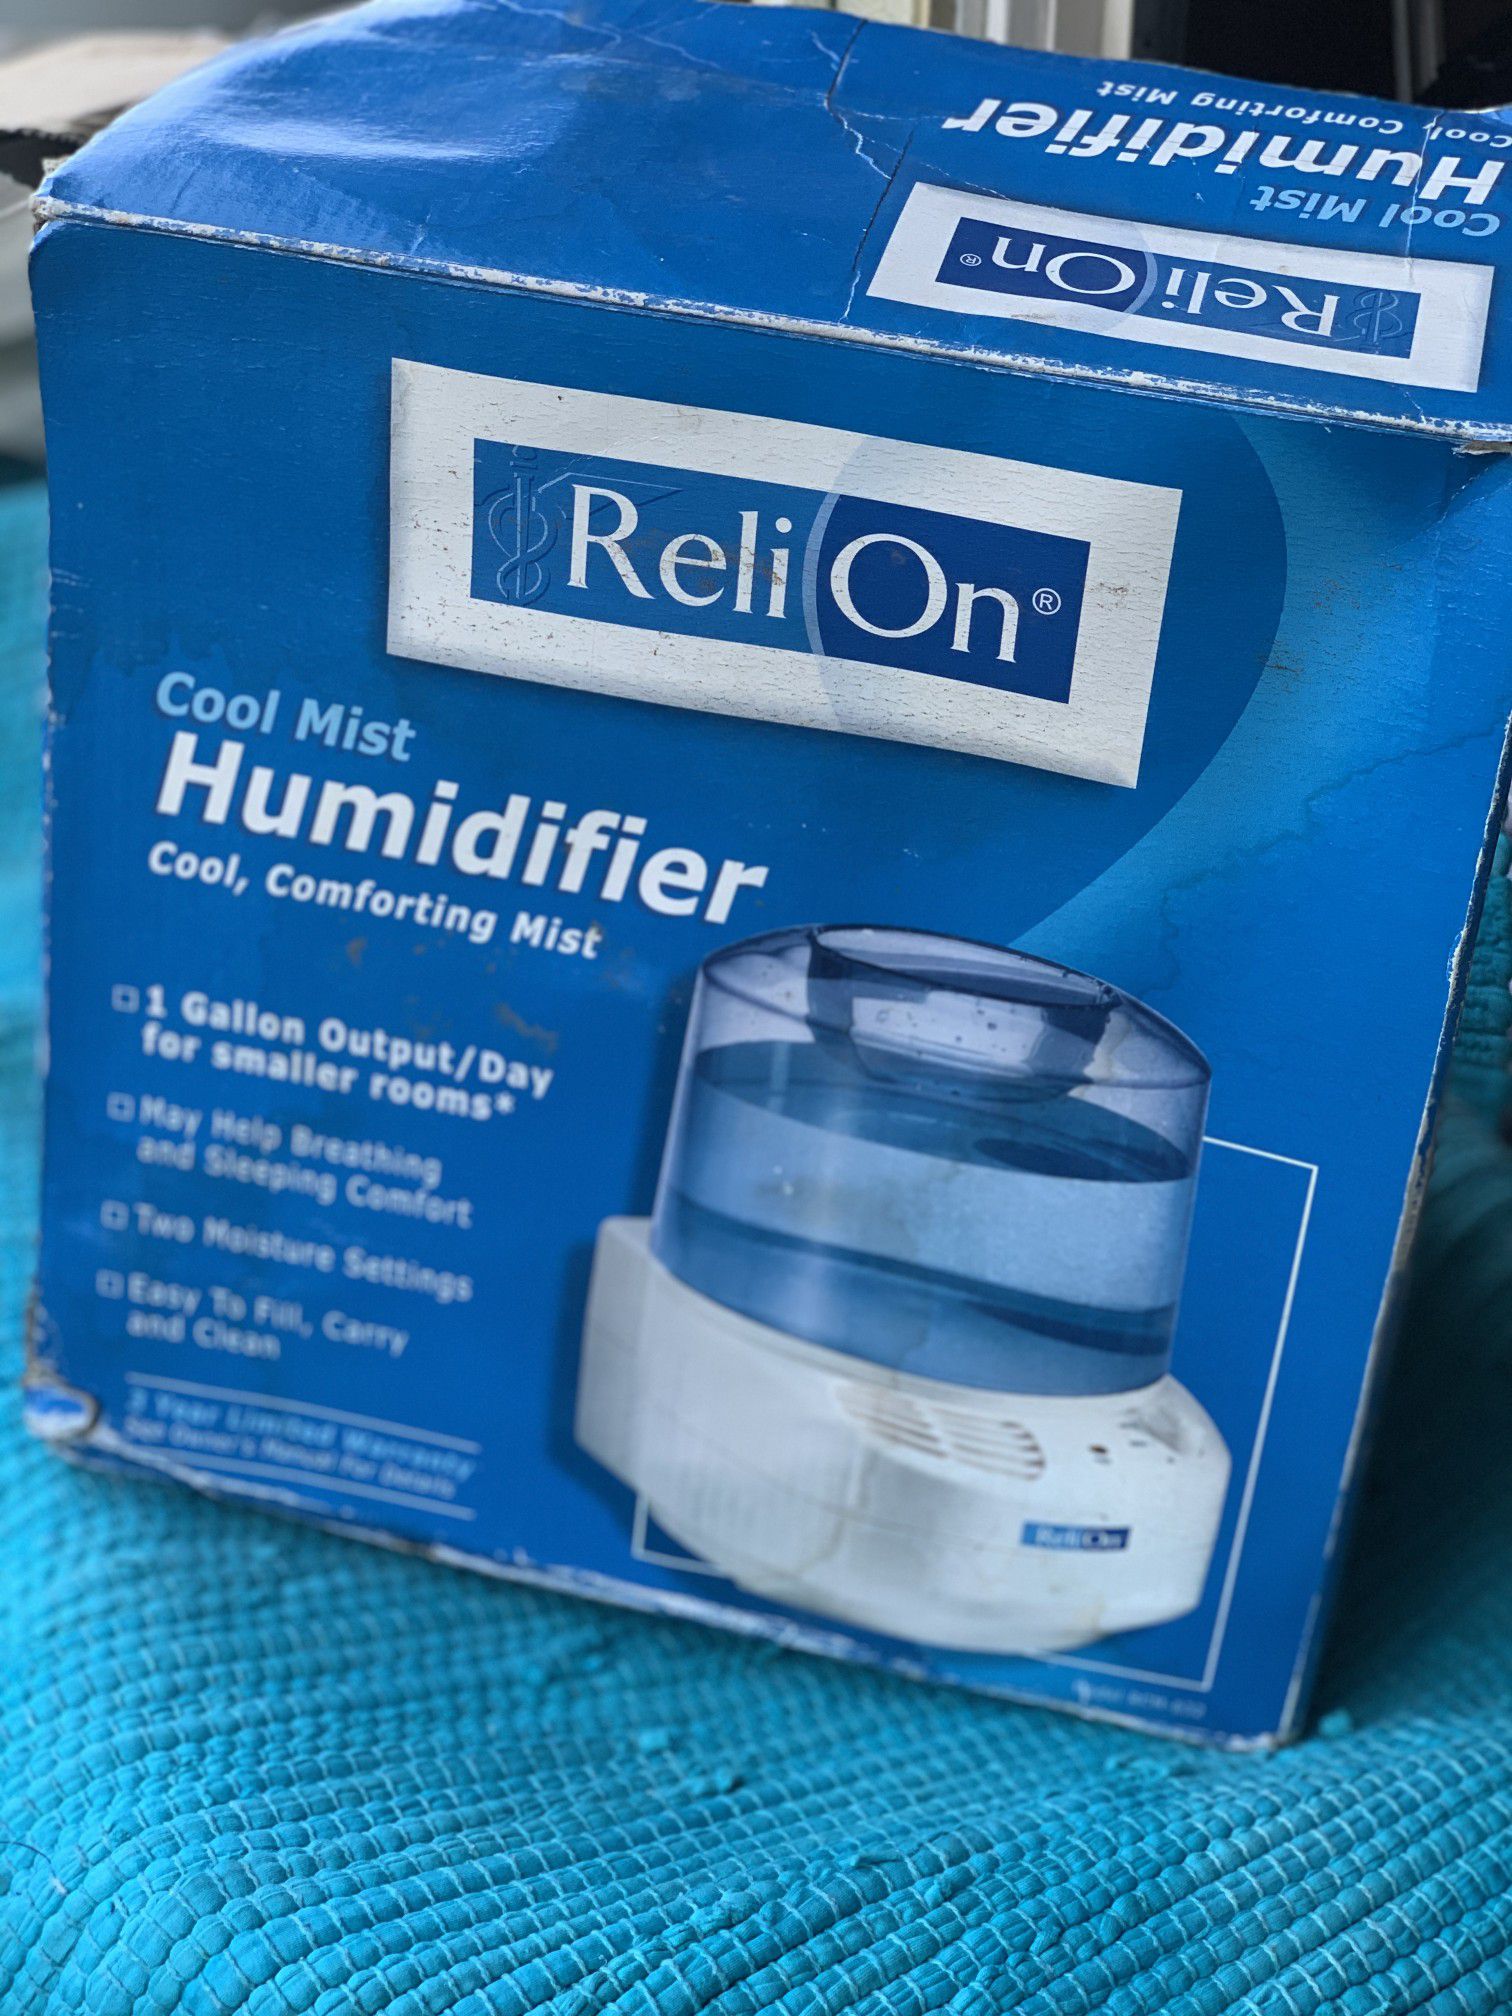 New humidifier